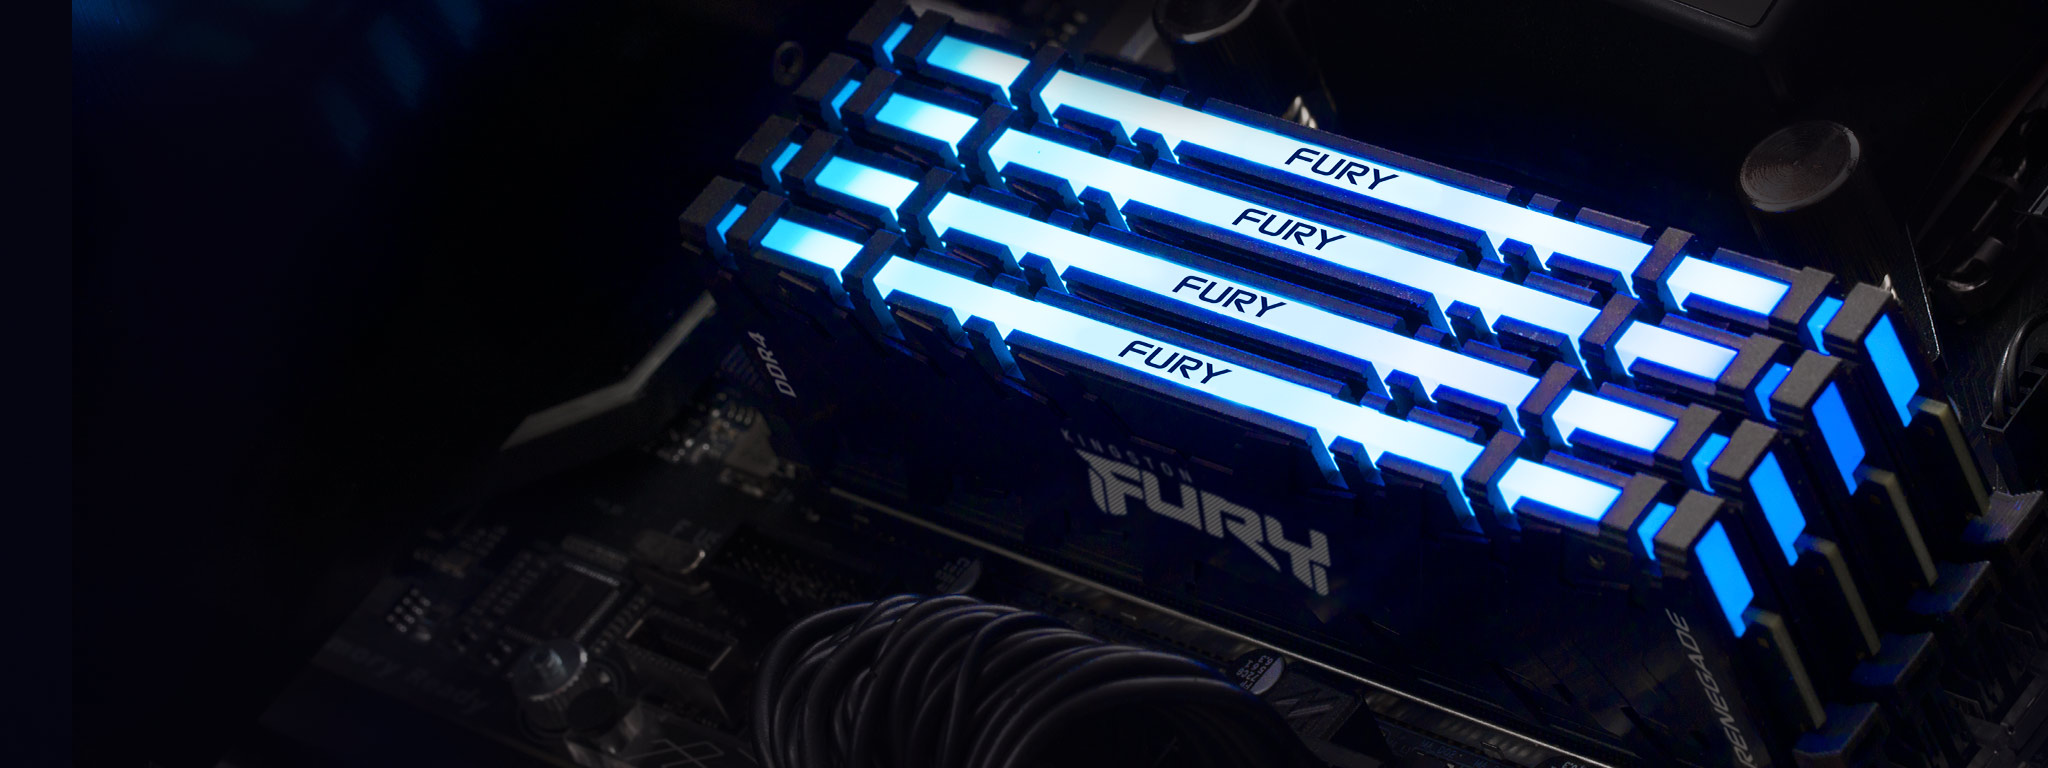 4 модулі пам’яті Kingston FURY Renegade DDR4 RGB, що світяться синім кольором, встановлені в слоти пам’яті на материнській платі